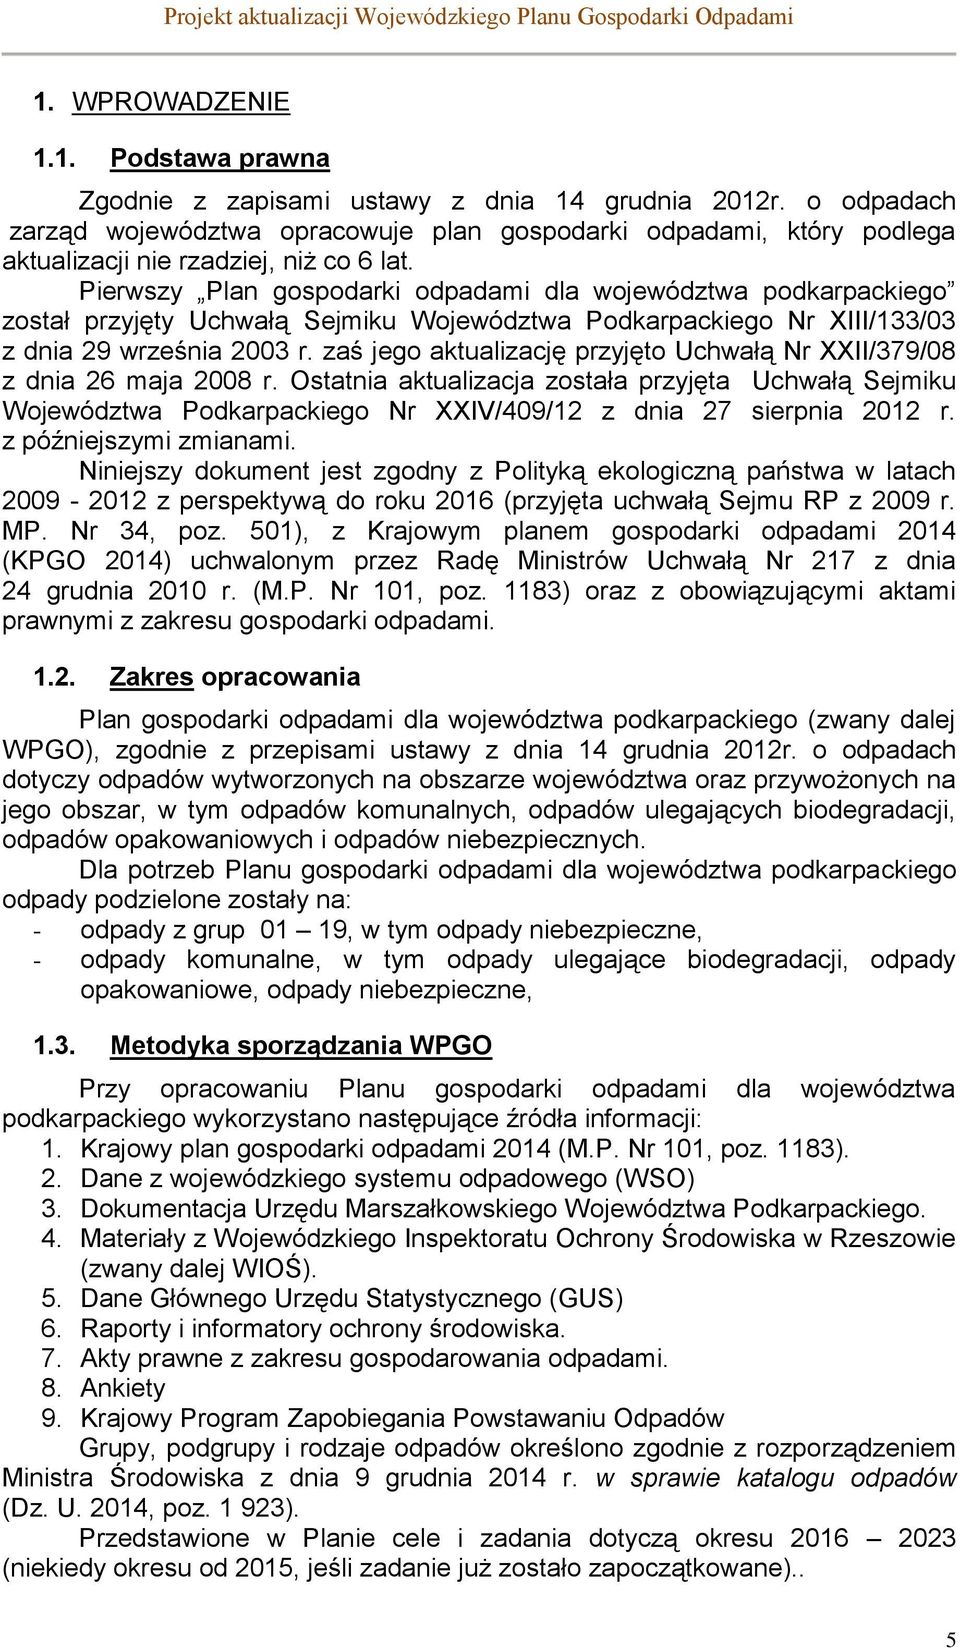 Pierwszy Plan gospodarki odpadami dla województwa podkarpackiego został przyjęty Uchwałą Sejmiku Województwa Podkarpackiego Nr XIII/133/03 z dnia 29 września 2003 r.